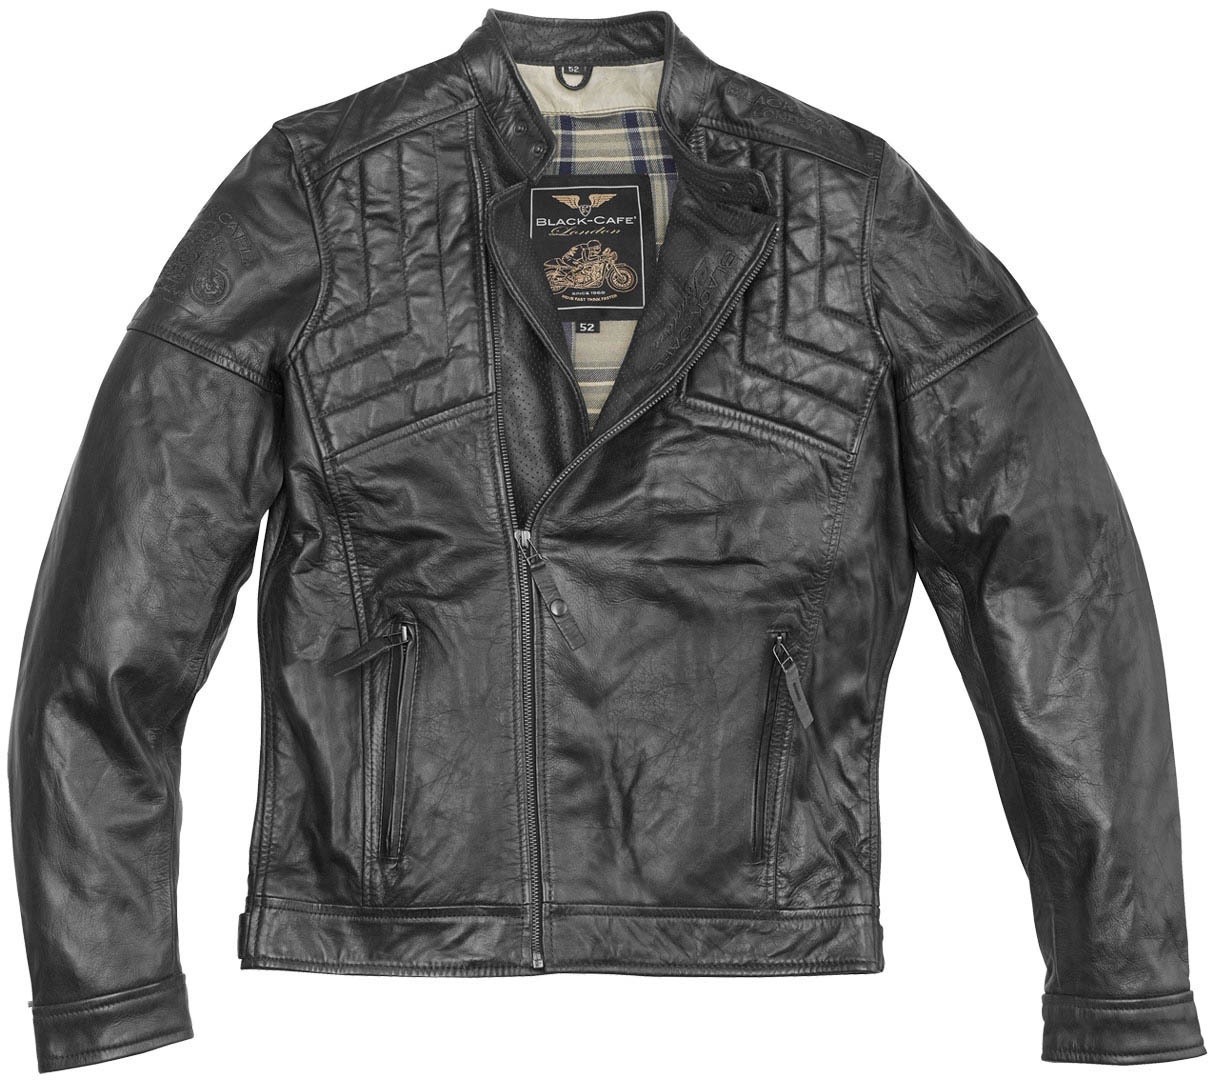 Black-Cafe London Philadelphia Motorfiets lederen jas, zwart, 48